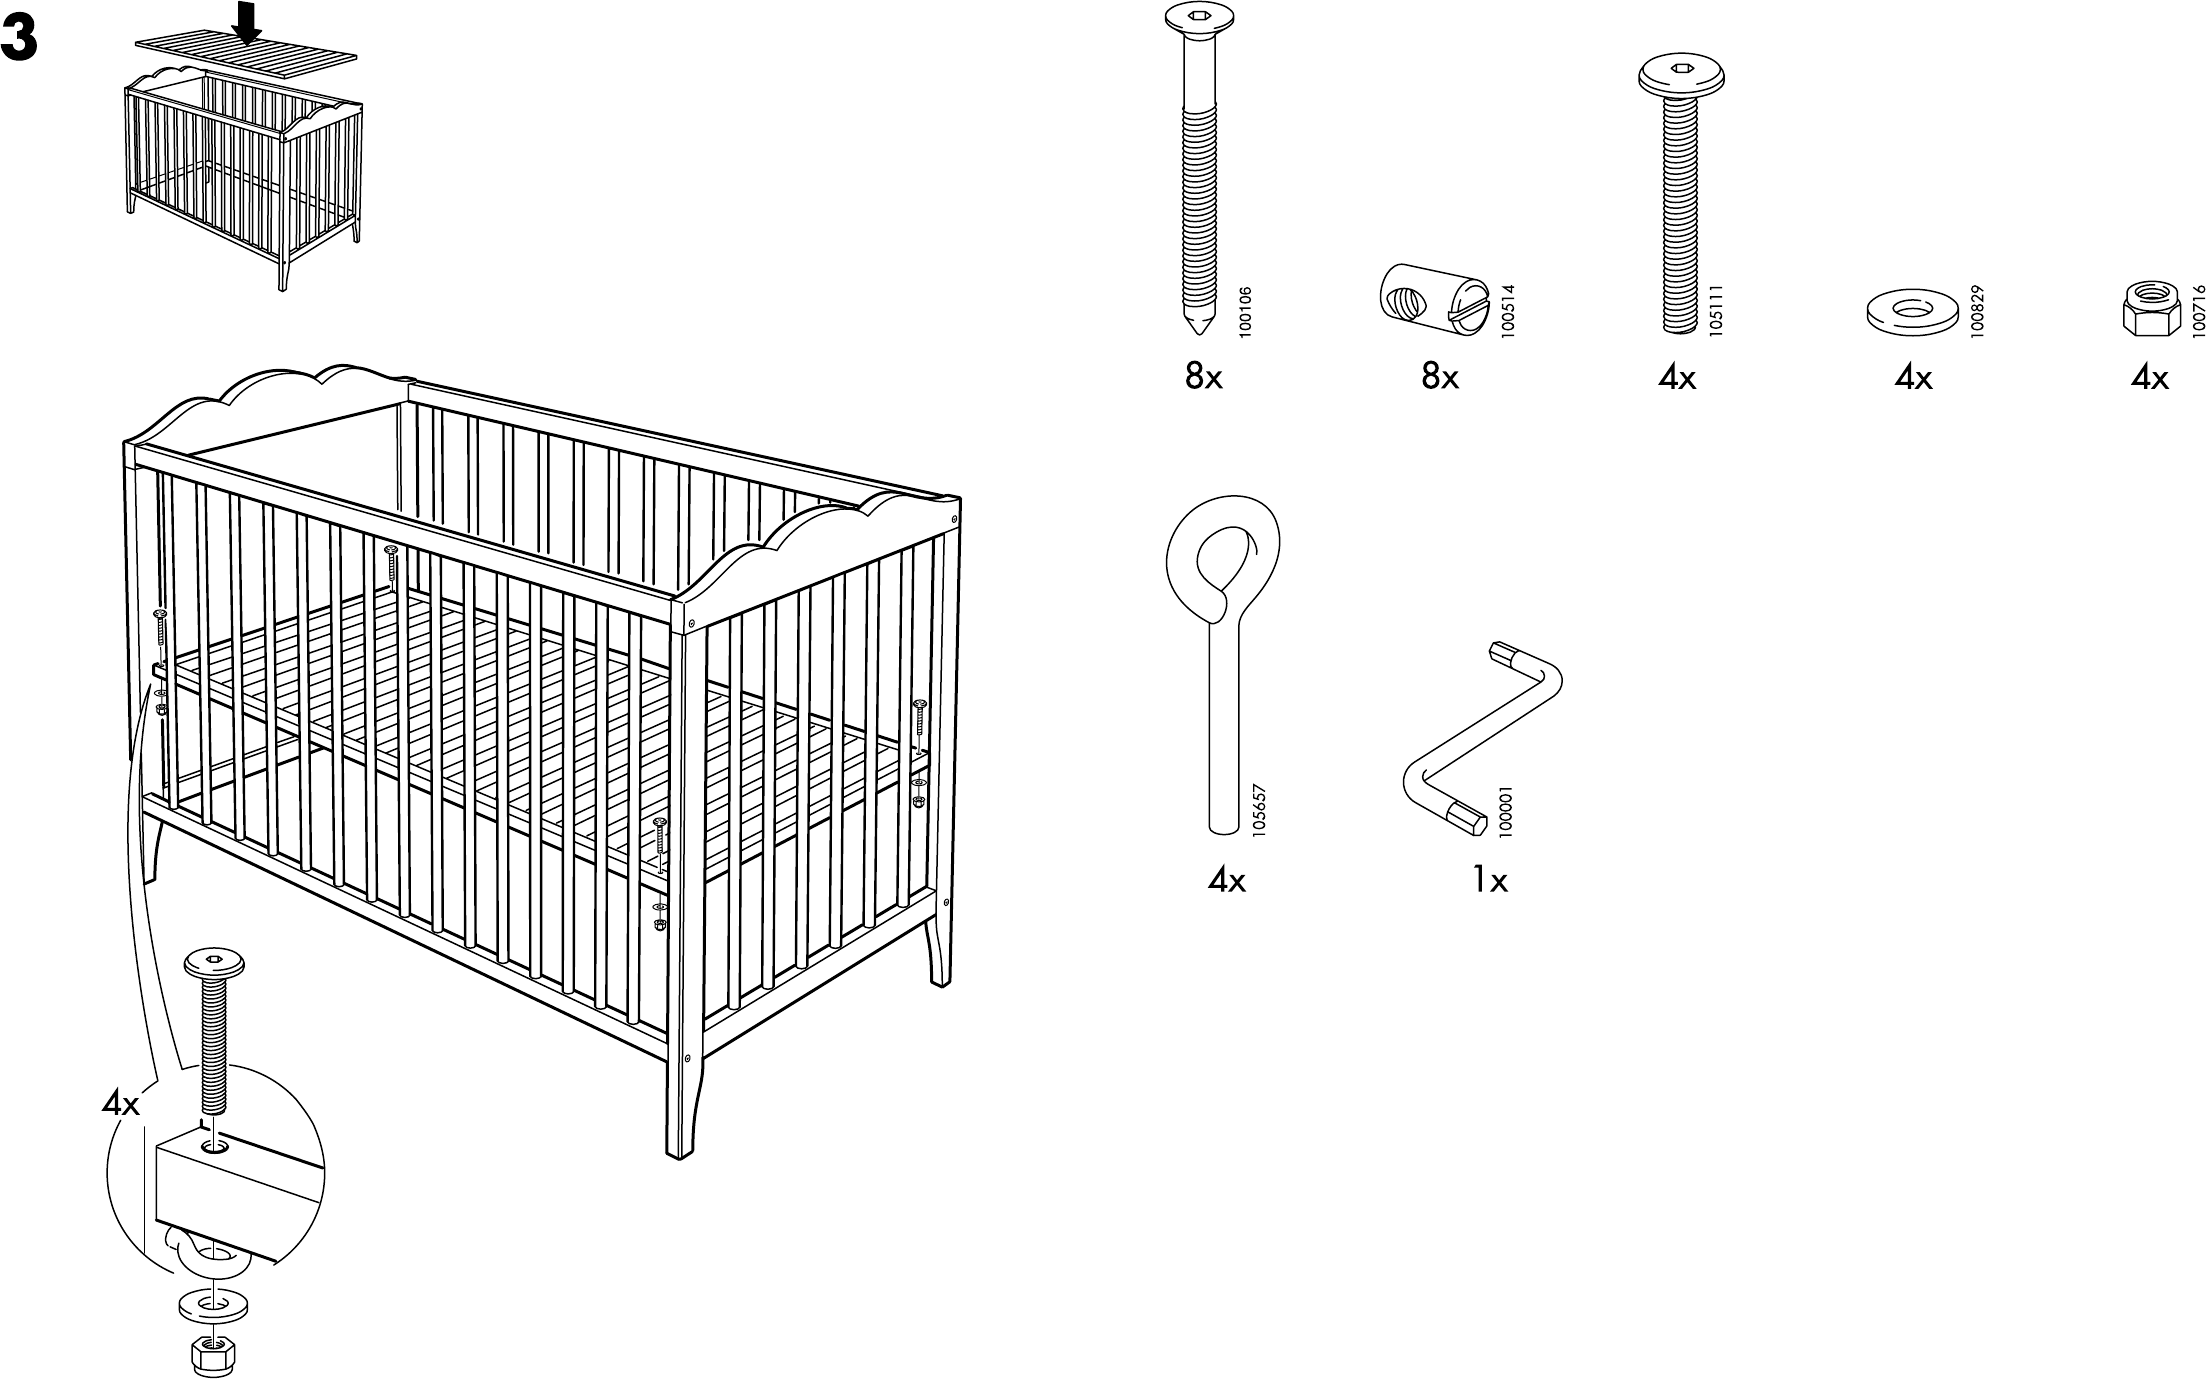 Сборка кроватки для новорожденных. Кроватка Hensvik ikea сборка. Сборка детской кроватки икеа. Ikea детская кровать Hensvik схема сборки. Фурнитура для детской кроватки икеа.